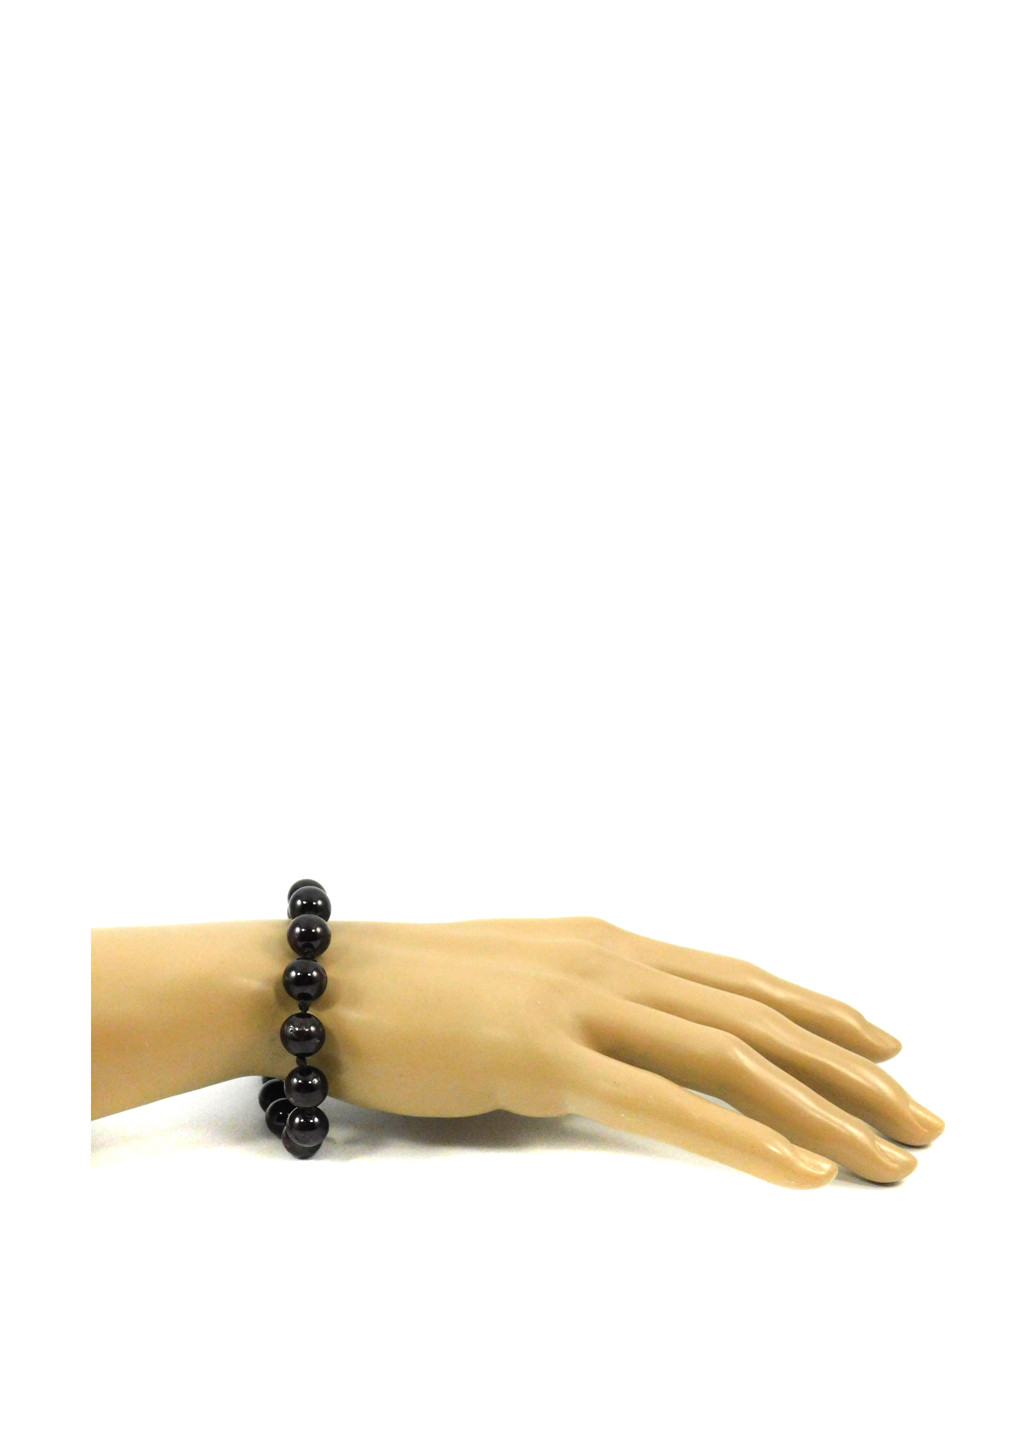 Эксклюзивный браслет Гранат 18 размер. Fursa fashion браслет (155911057)